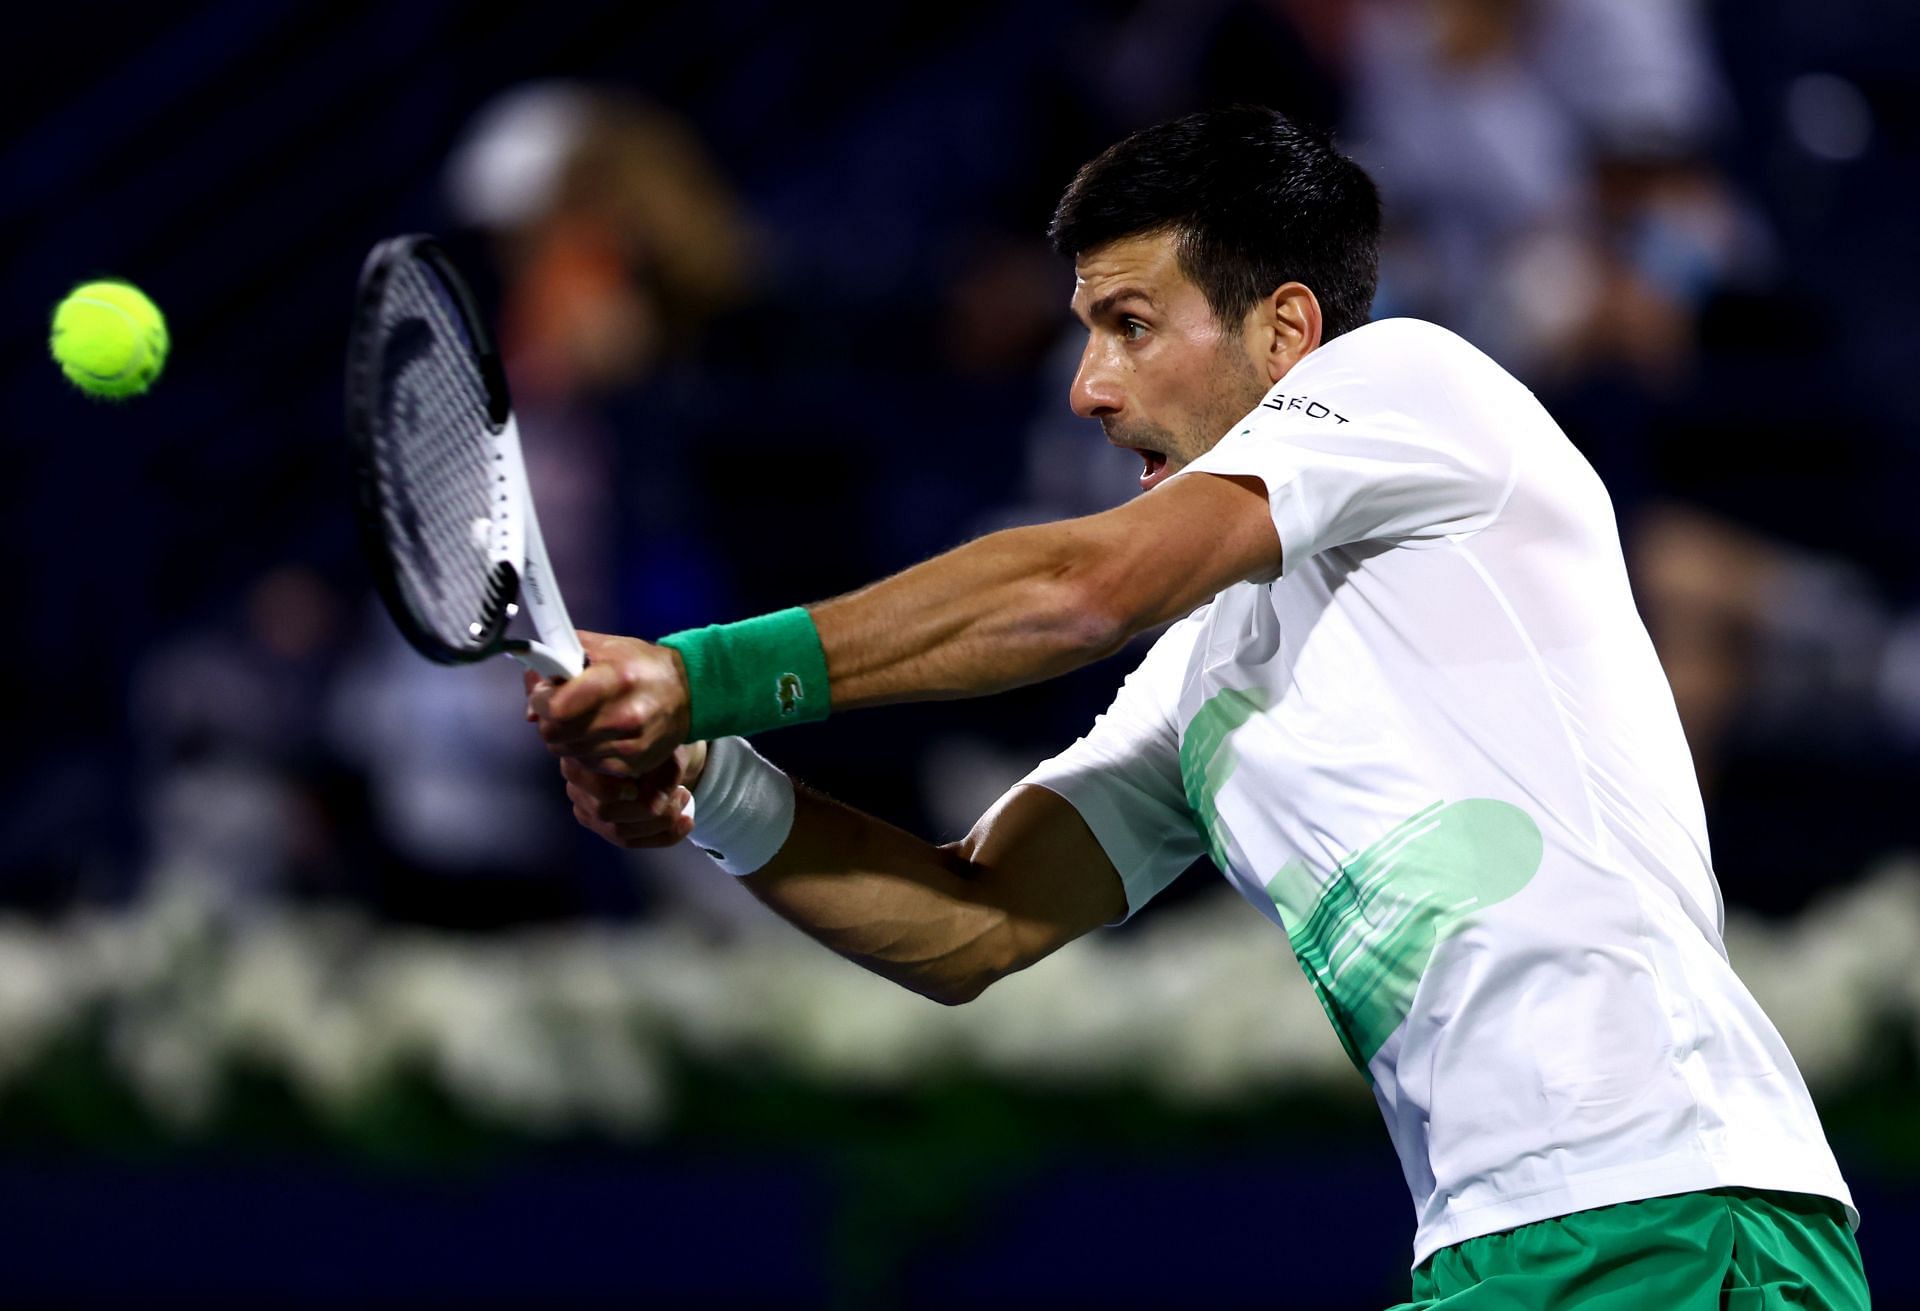 Novak Djokovic in action in Dubai